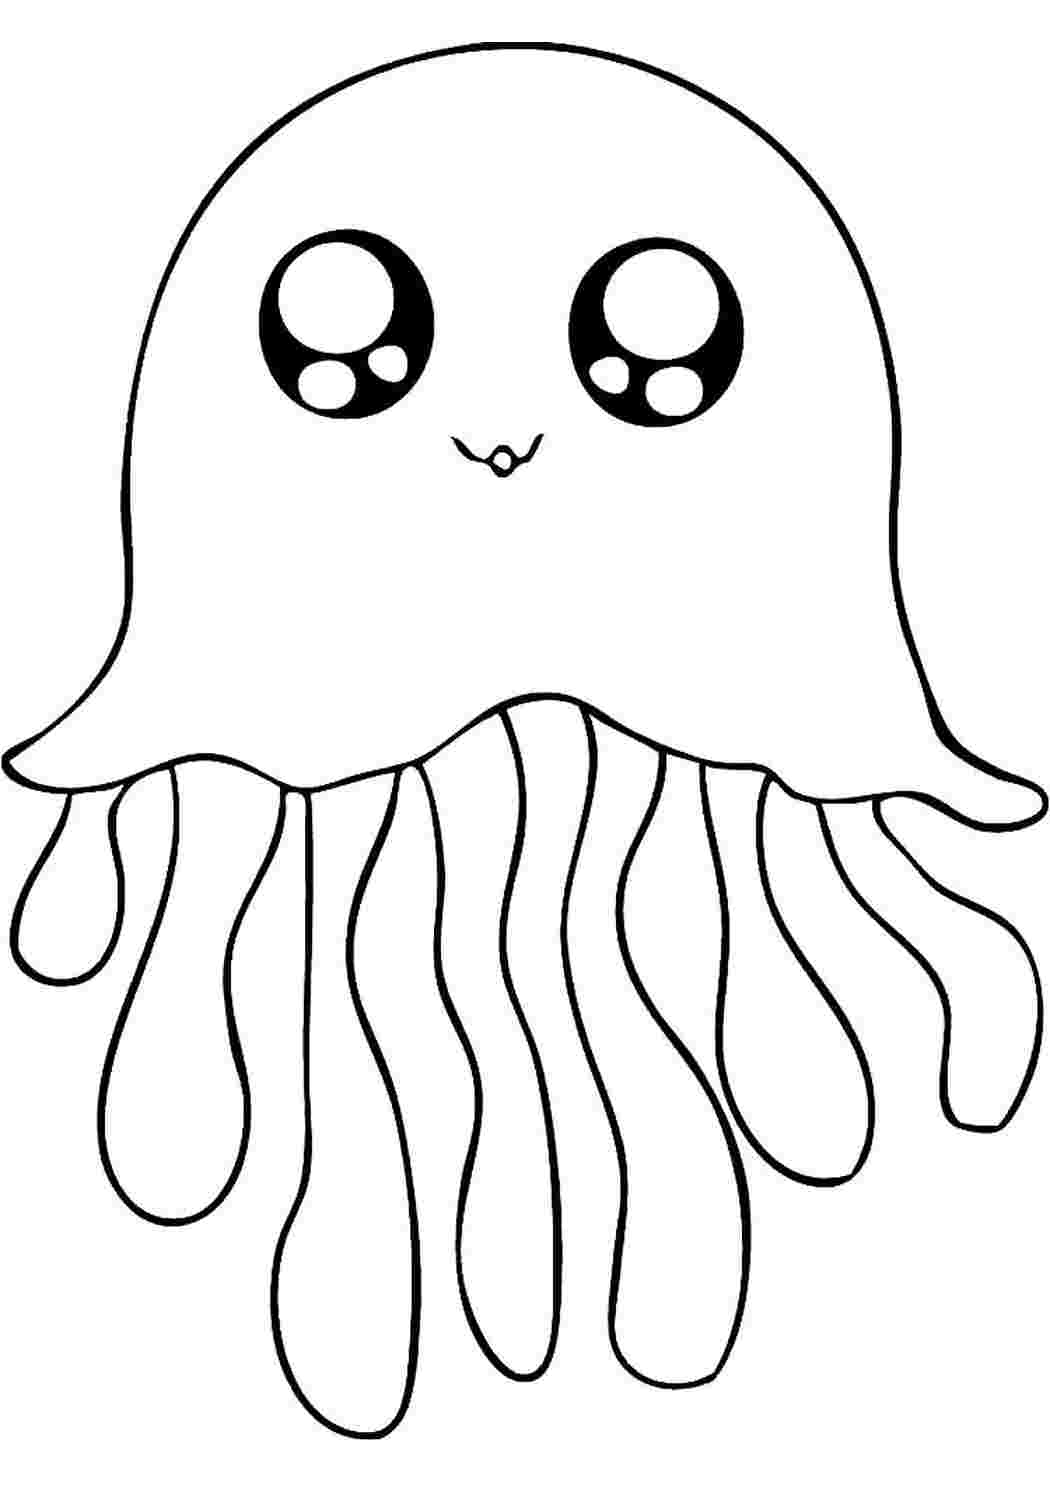 Медуза картинка для детей раскраска